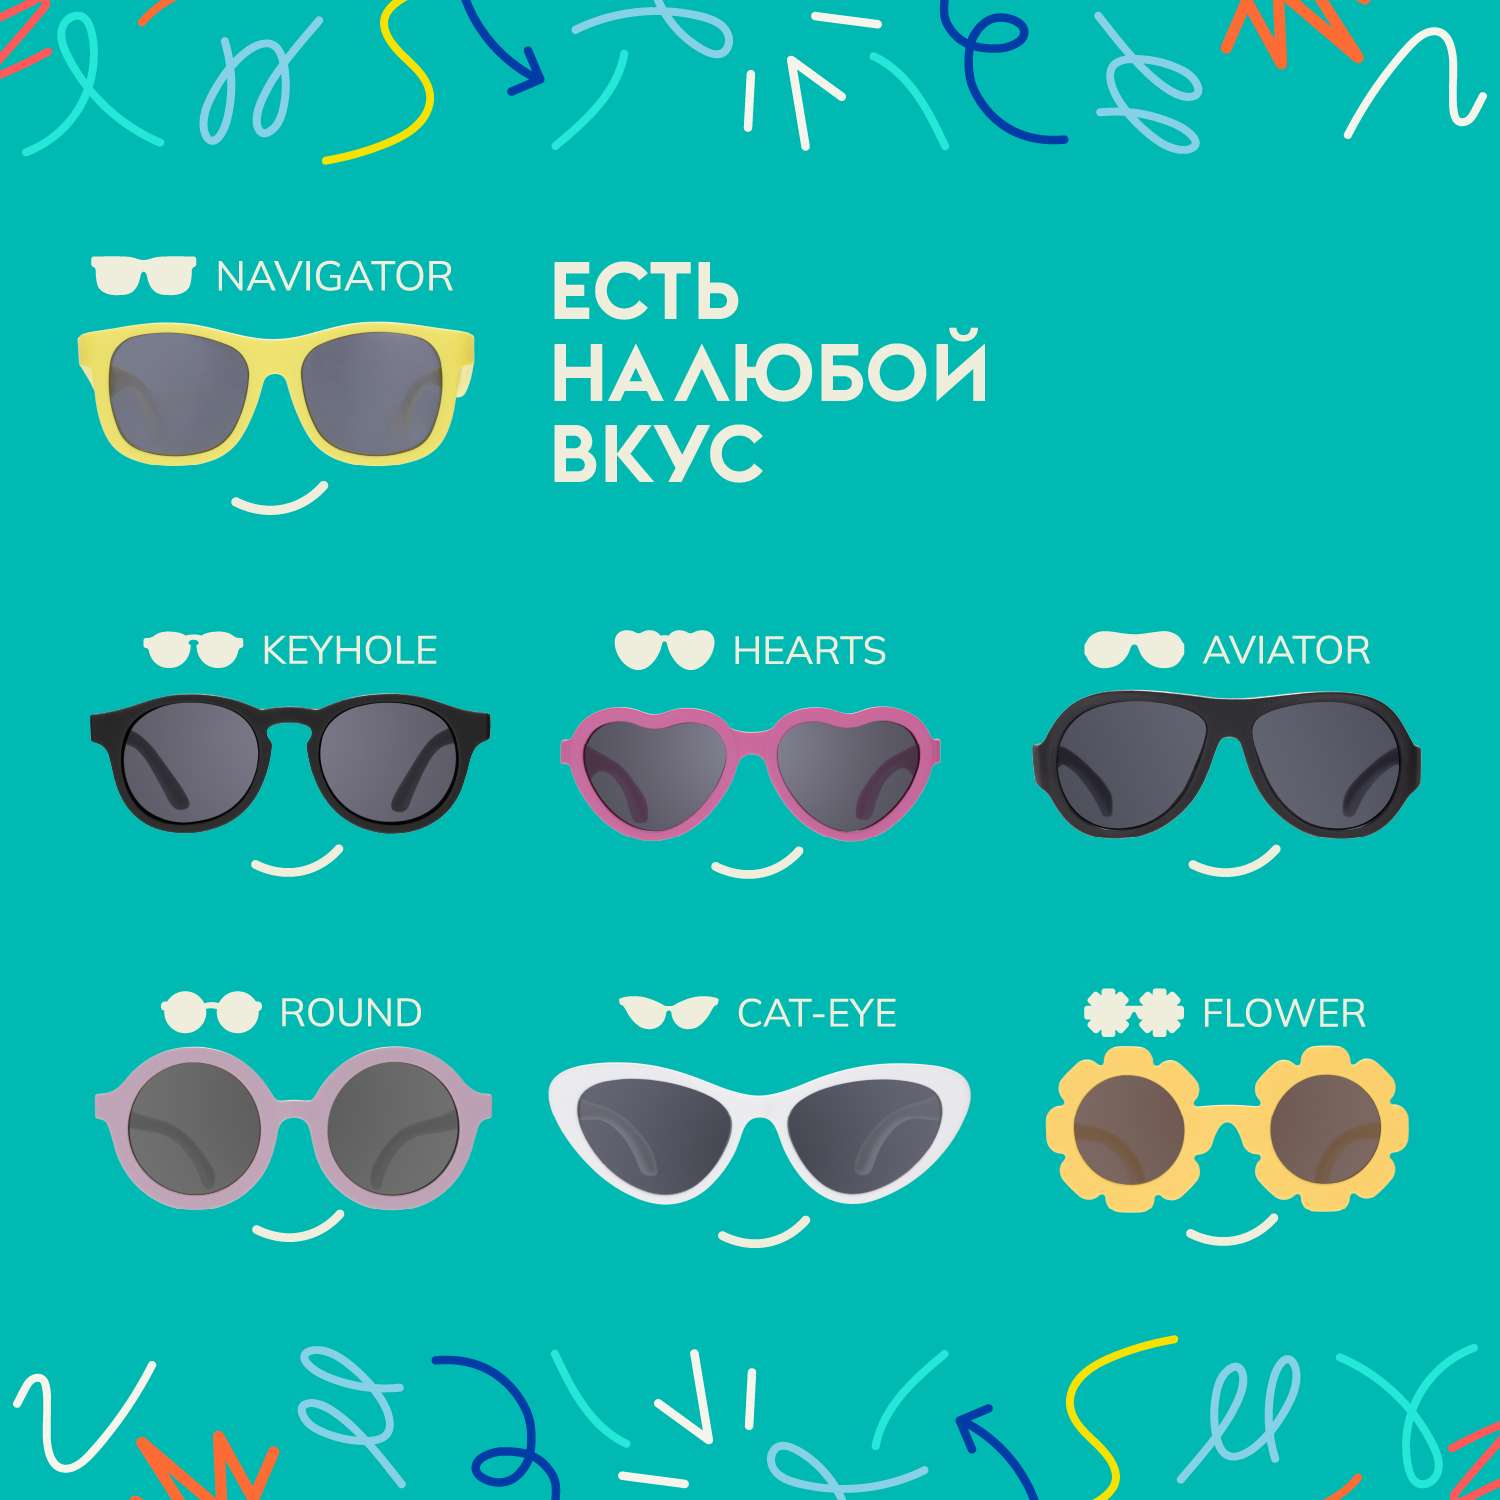 Солнцезащитные очки 3-5 Babiators BAB-212 - фото 6